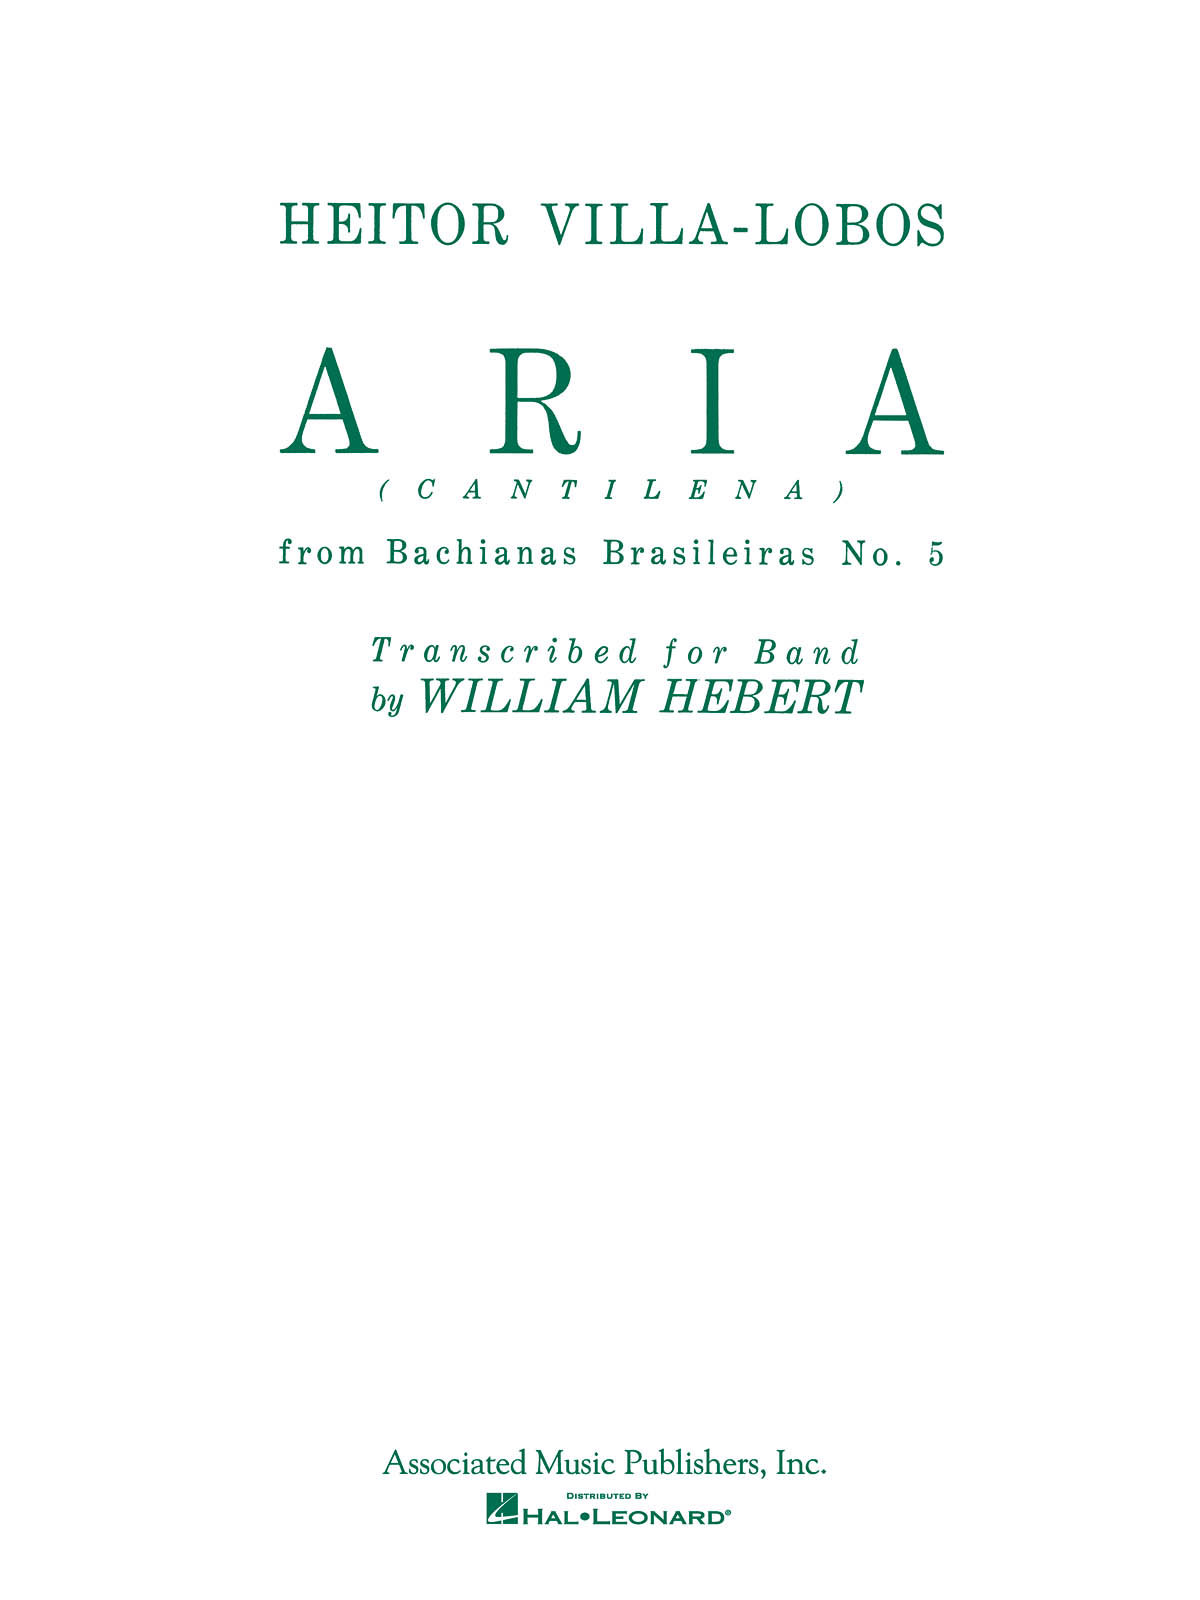 Heitor Villa-Lobos: Aria (Bachianas Brasileiras No. 5) Band Version - Score And